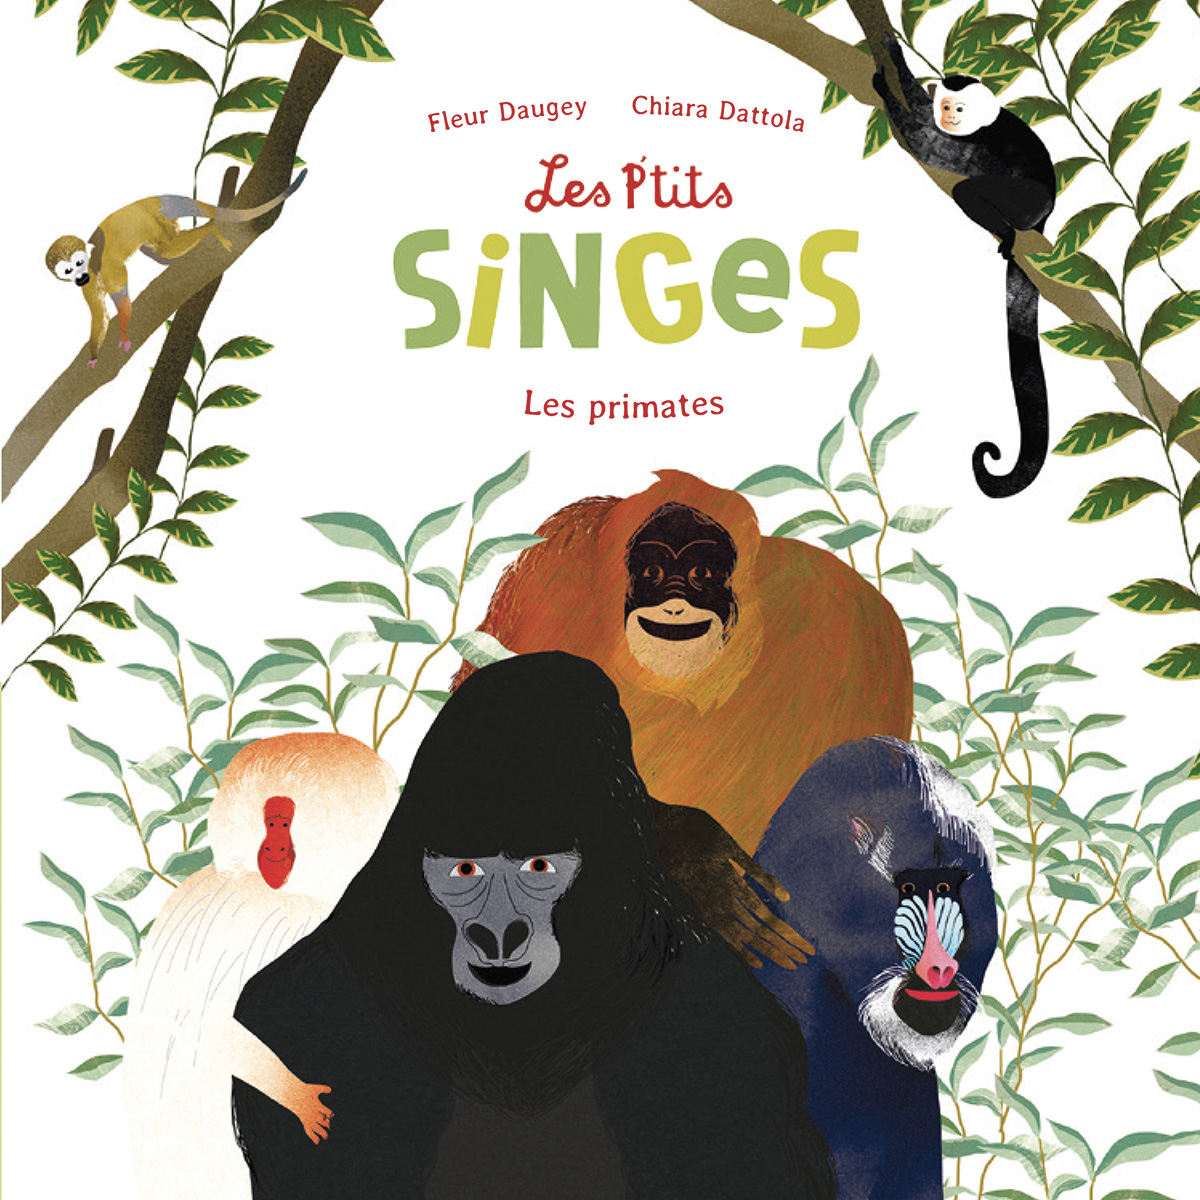 Les P’tits Singes - Les primates